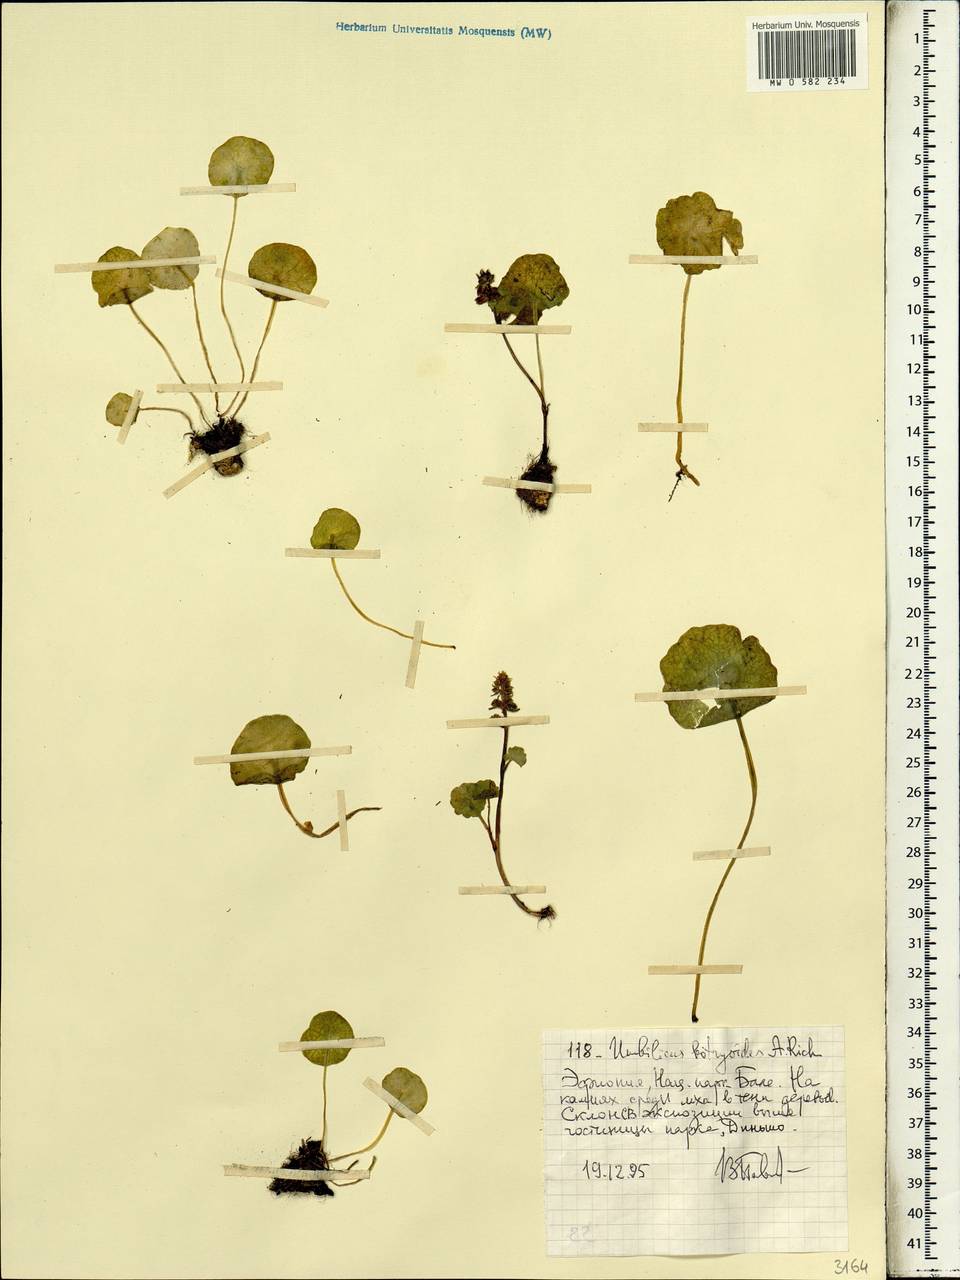 Umbilicus botryoides Hochst. ex A. Rich., Африка (AFR) (Эфиопия)